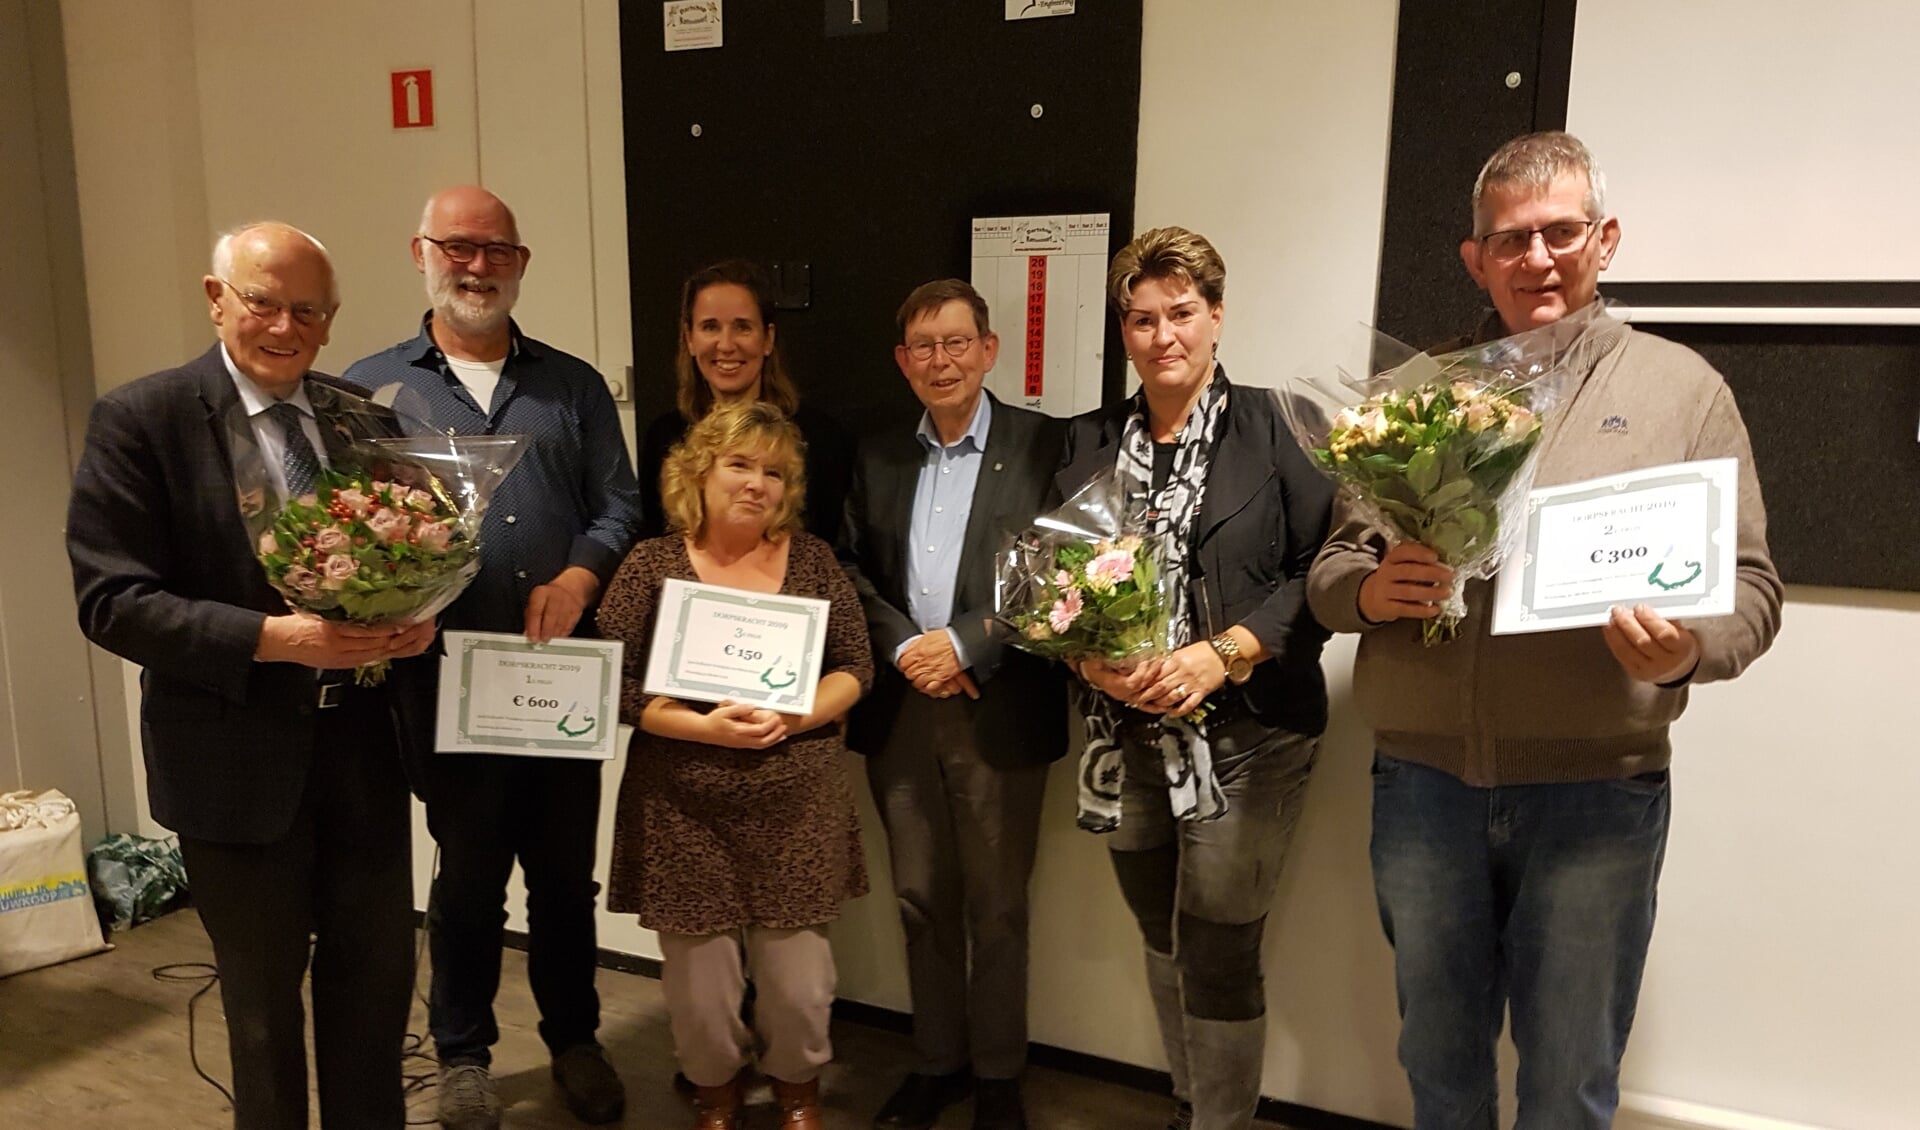 • De drie prijswinnaars Nieuw-Lekkerland, Stellendam en Ooltgensplaat met in het midden achteraan juryleden Marianne Verhoev en Gert Jan Jansen.